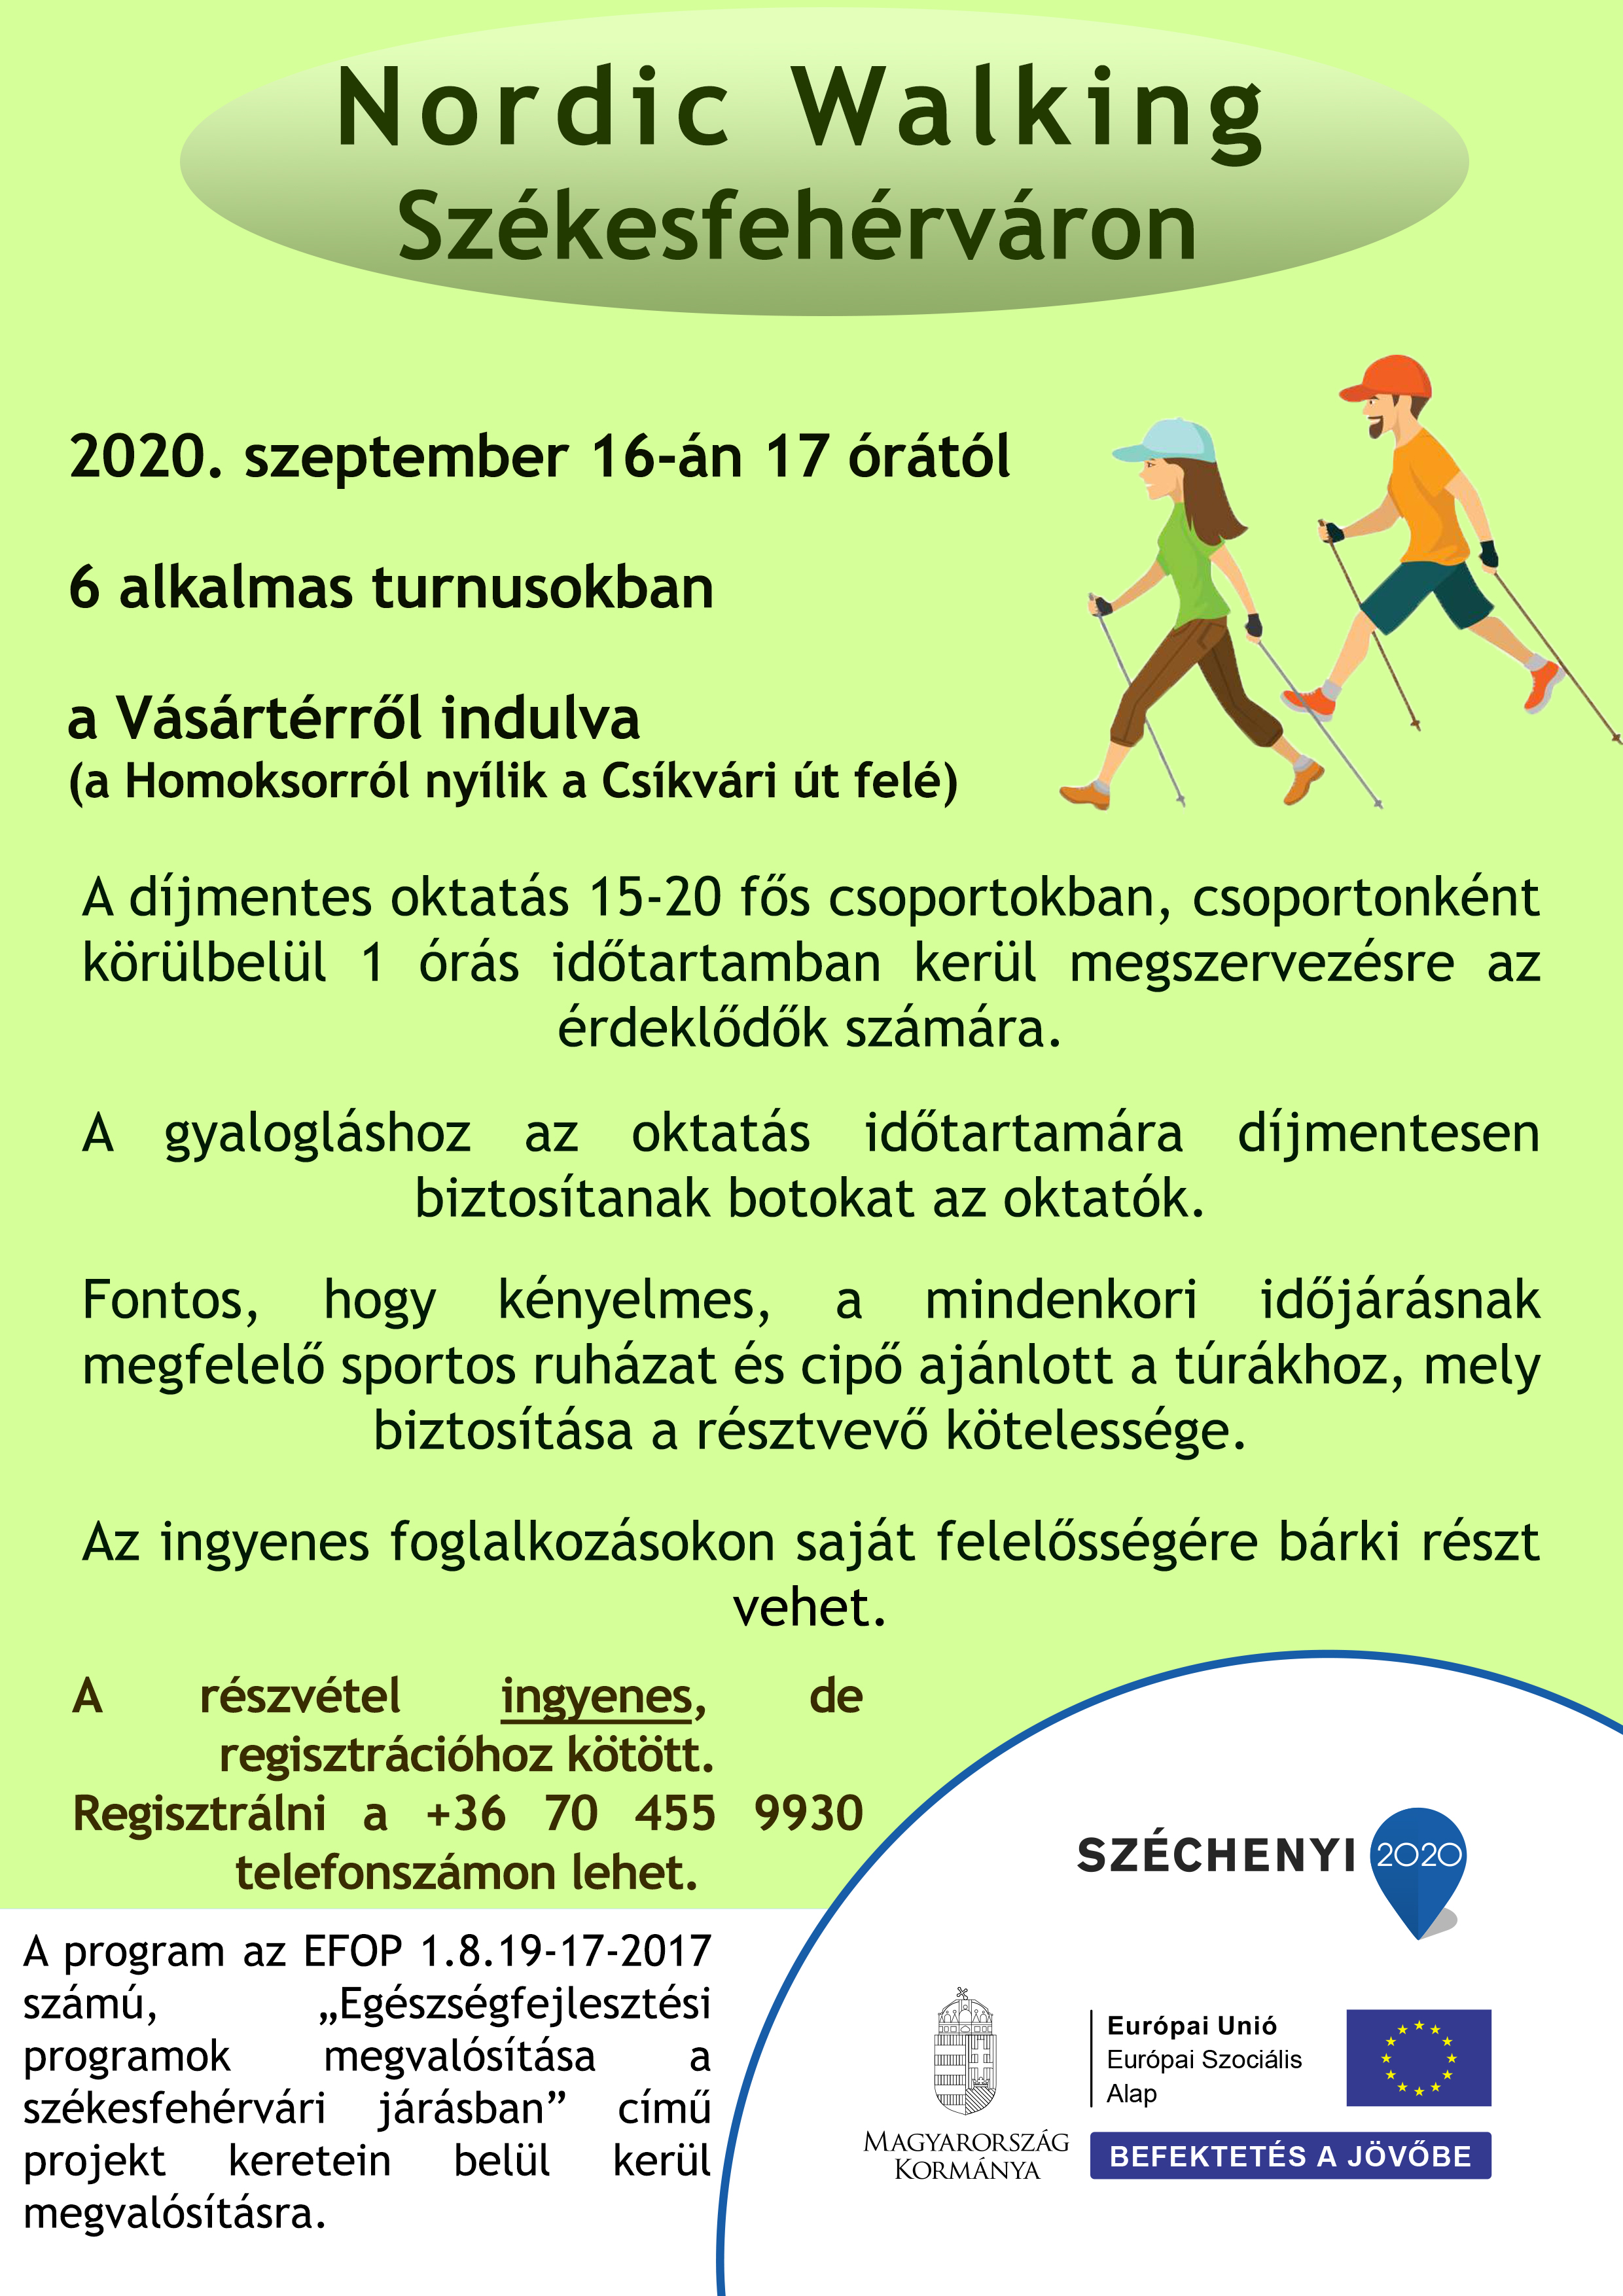 Sportolás a szabadban, jó társaságban! – ingyenes nordic walking tanfolyamok indulnak szerdától